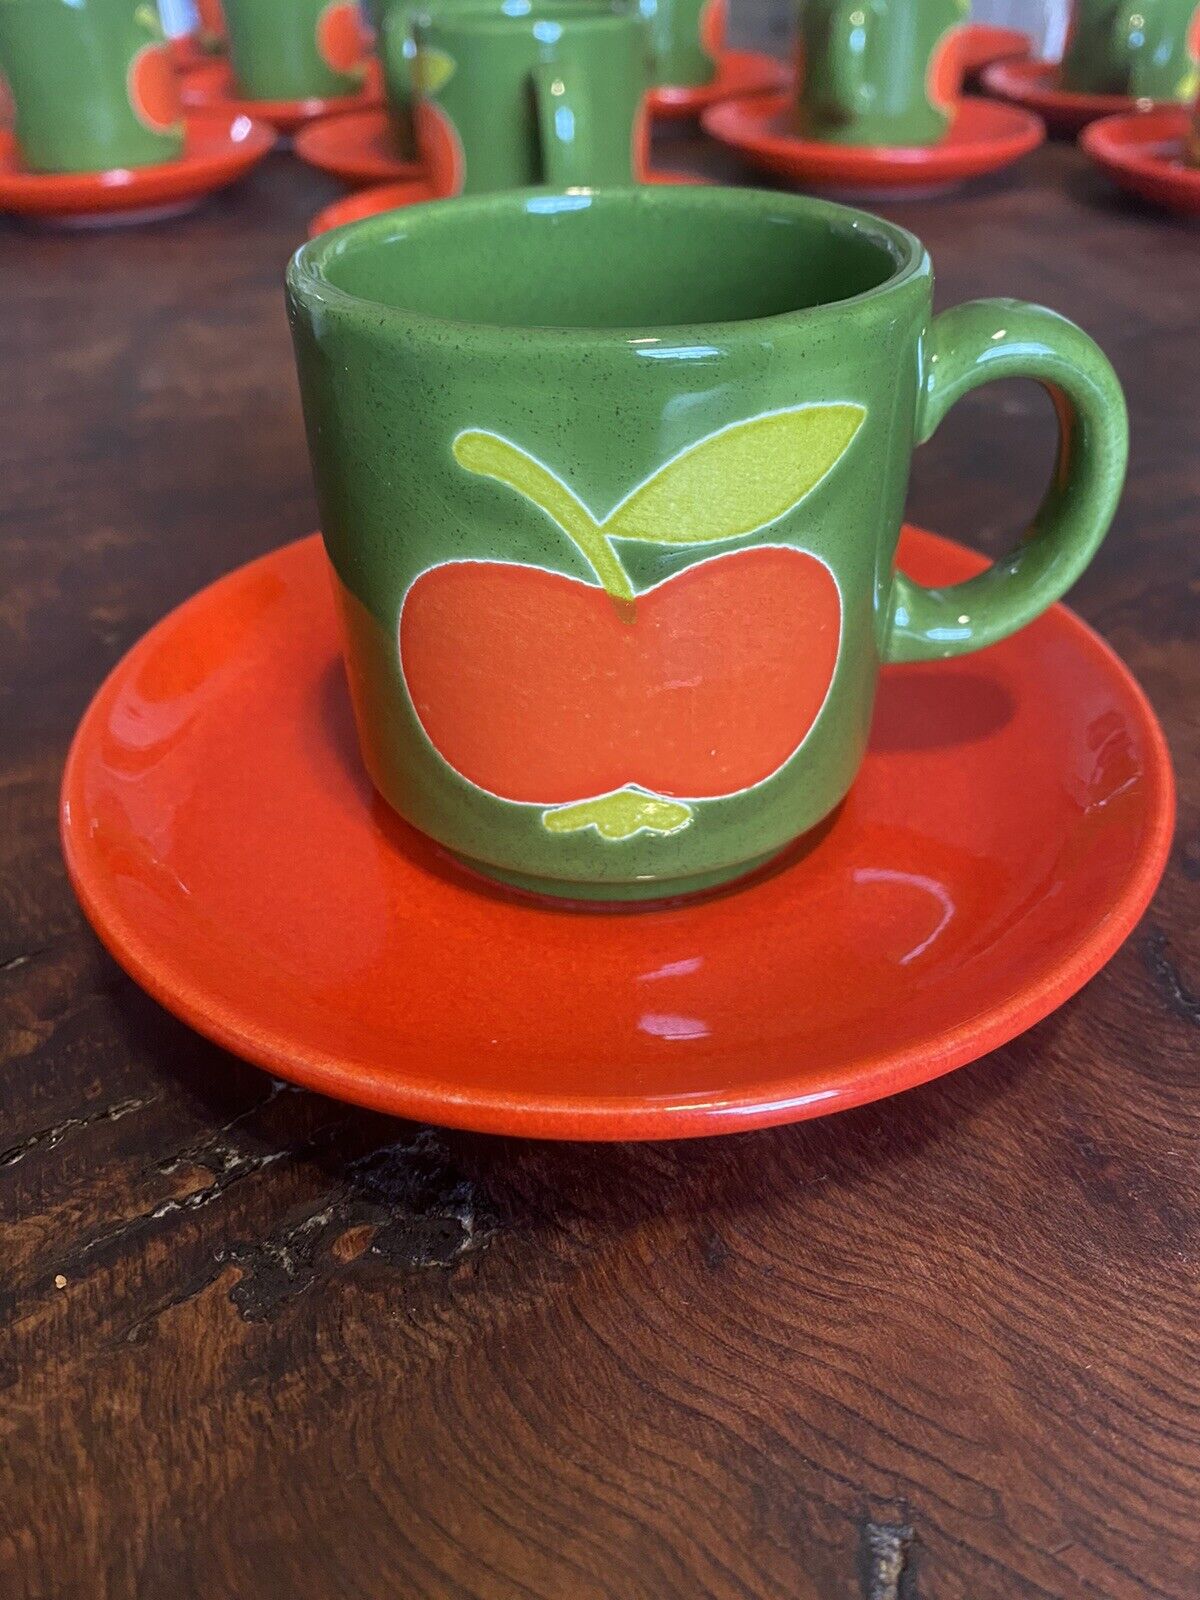 Waechtersbach Red Apple Green Mug Tea Set - Mug And Plate